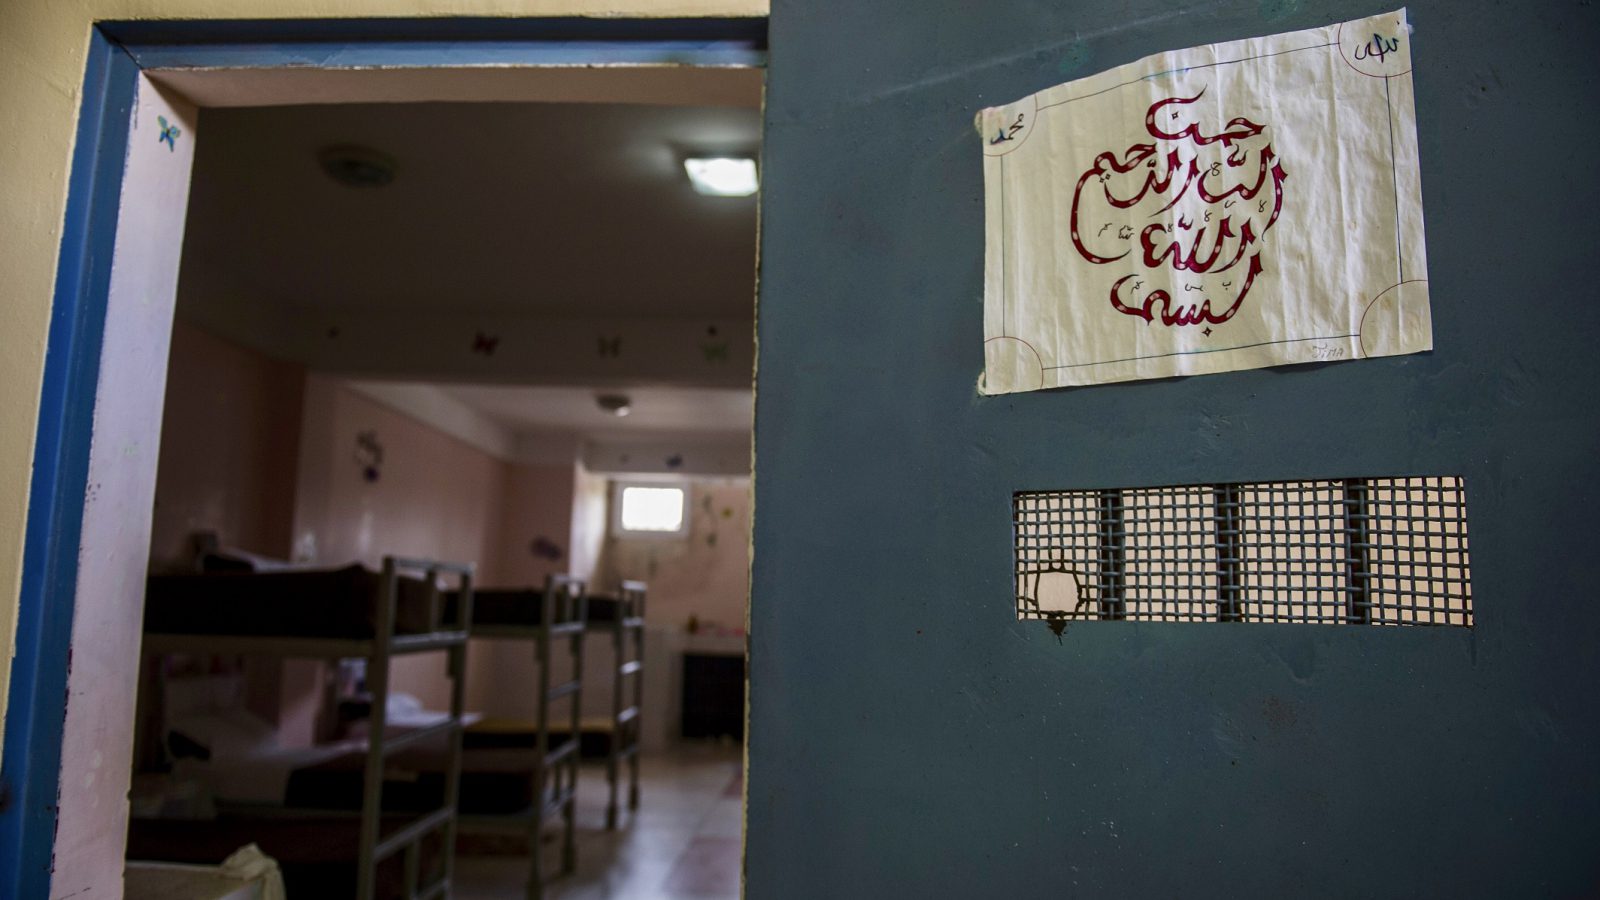 Kolea Prison, one of Algeria’s most modern prisons 